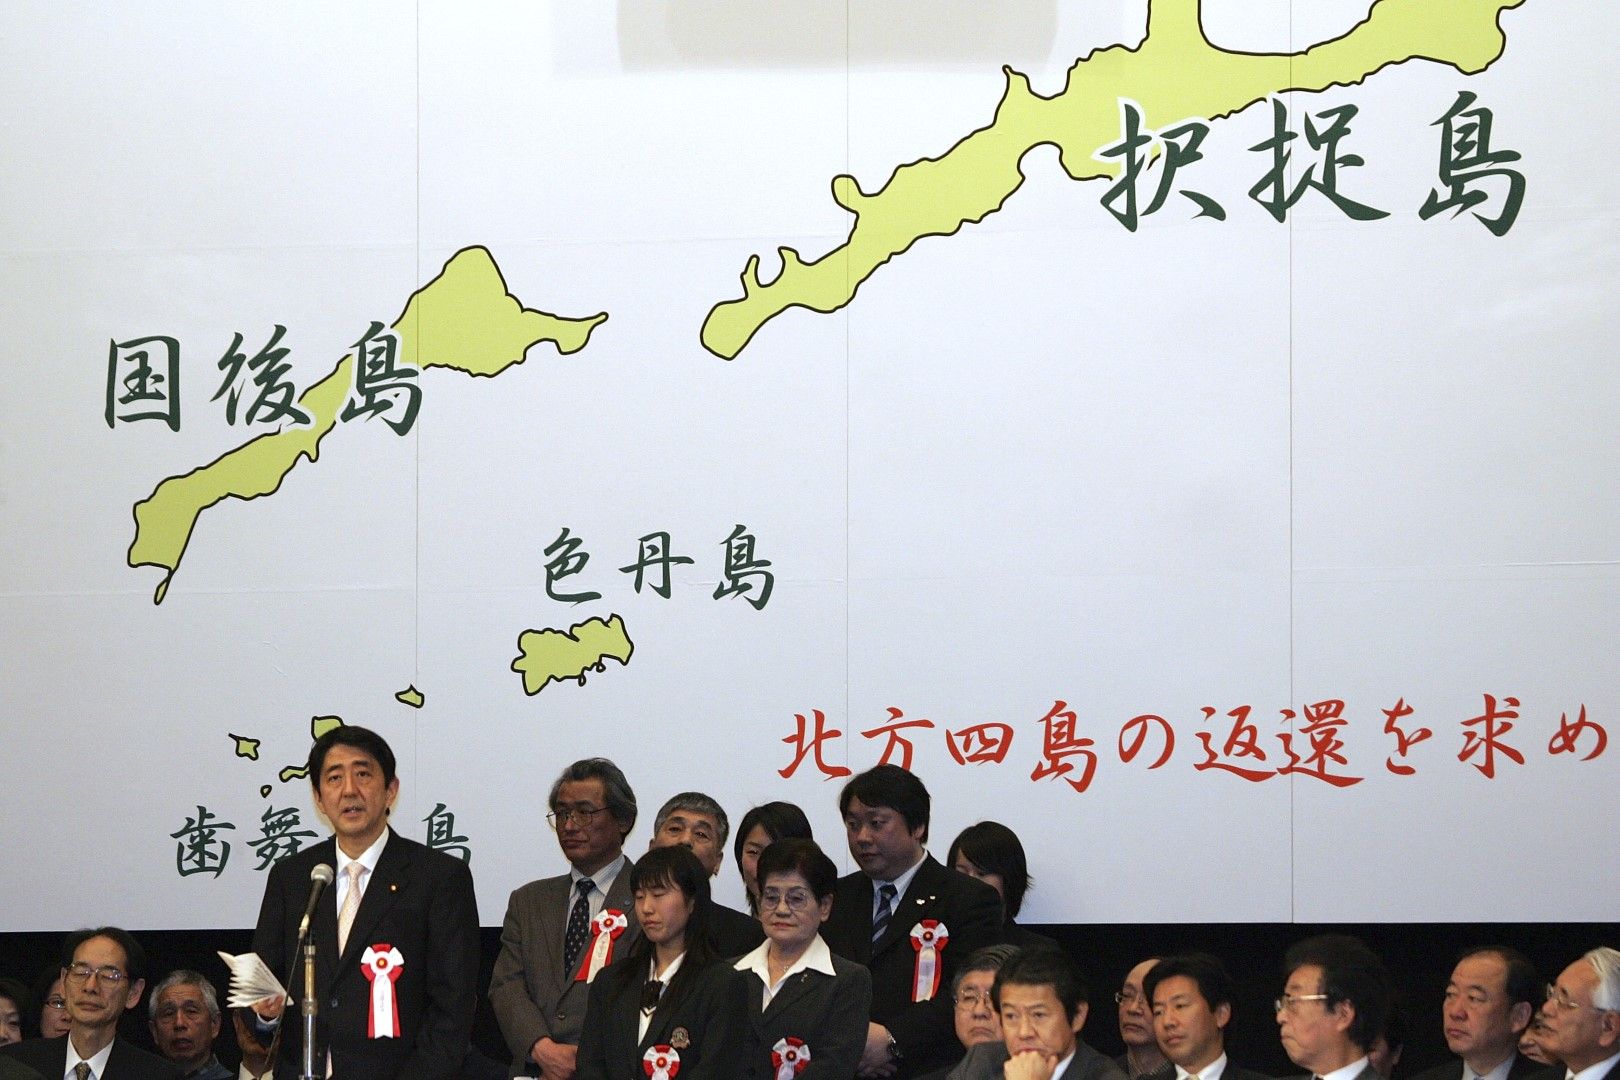 Бившият премиер Шиндзо Абе се оттегли от поста си. Той беше заявил като свой приоритет разрешаването на териториалния спор с Русия за Курилските острови